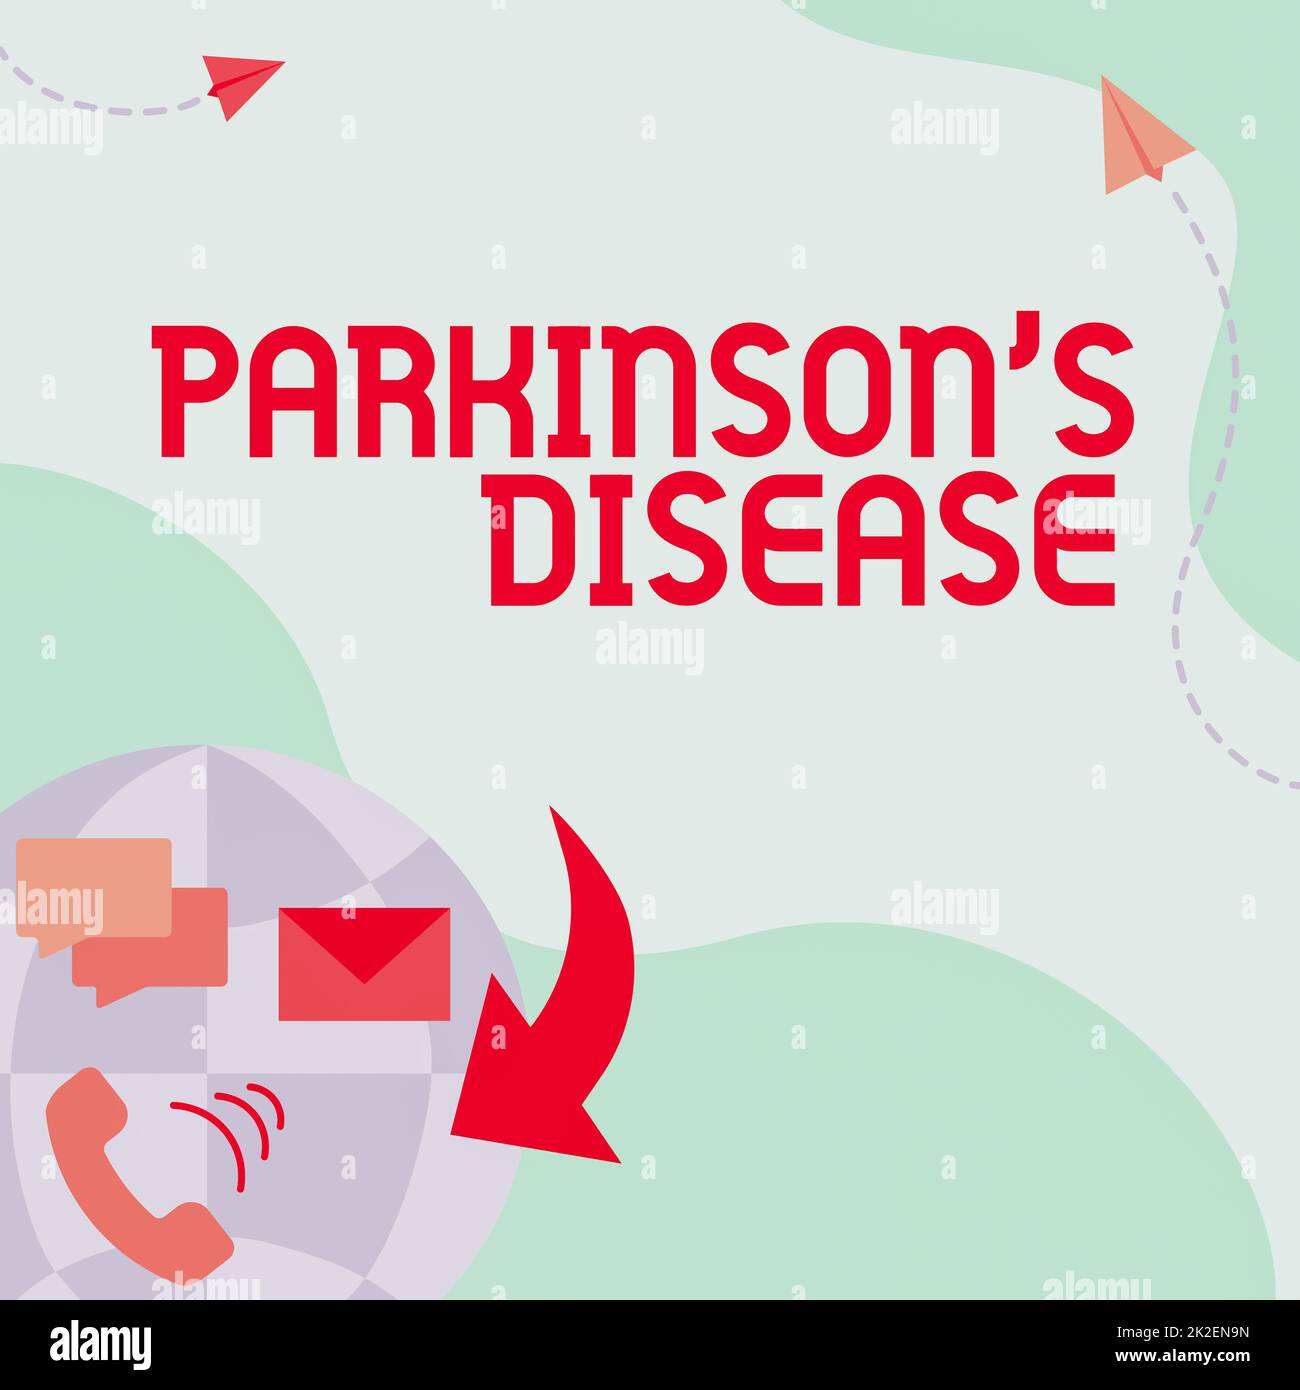 Textunterschrift mit Parkinson-Krankheit. Geschäftsidee Störung des Nervensystems, die Bewegungen beeinflusst Internet-Netzwerk-Zeichnung mit bunten Nachrichten S.. Stockfoto